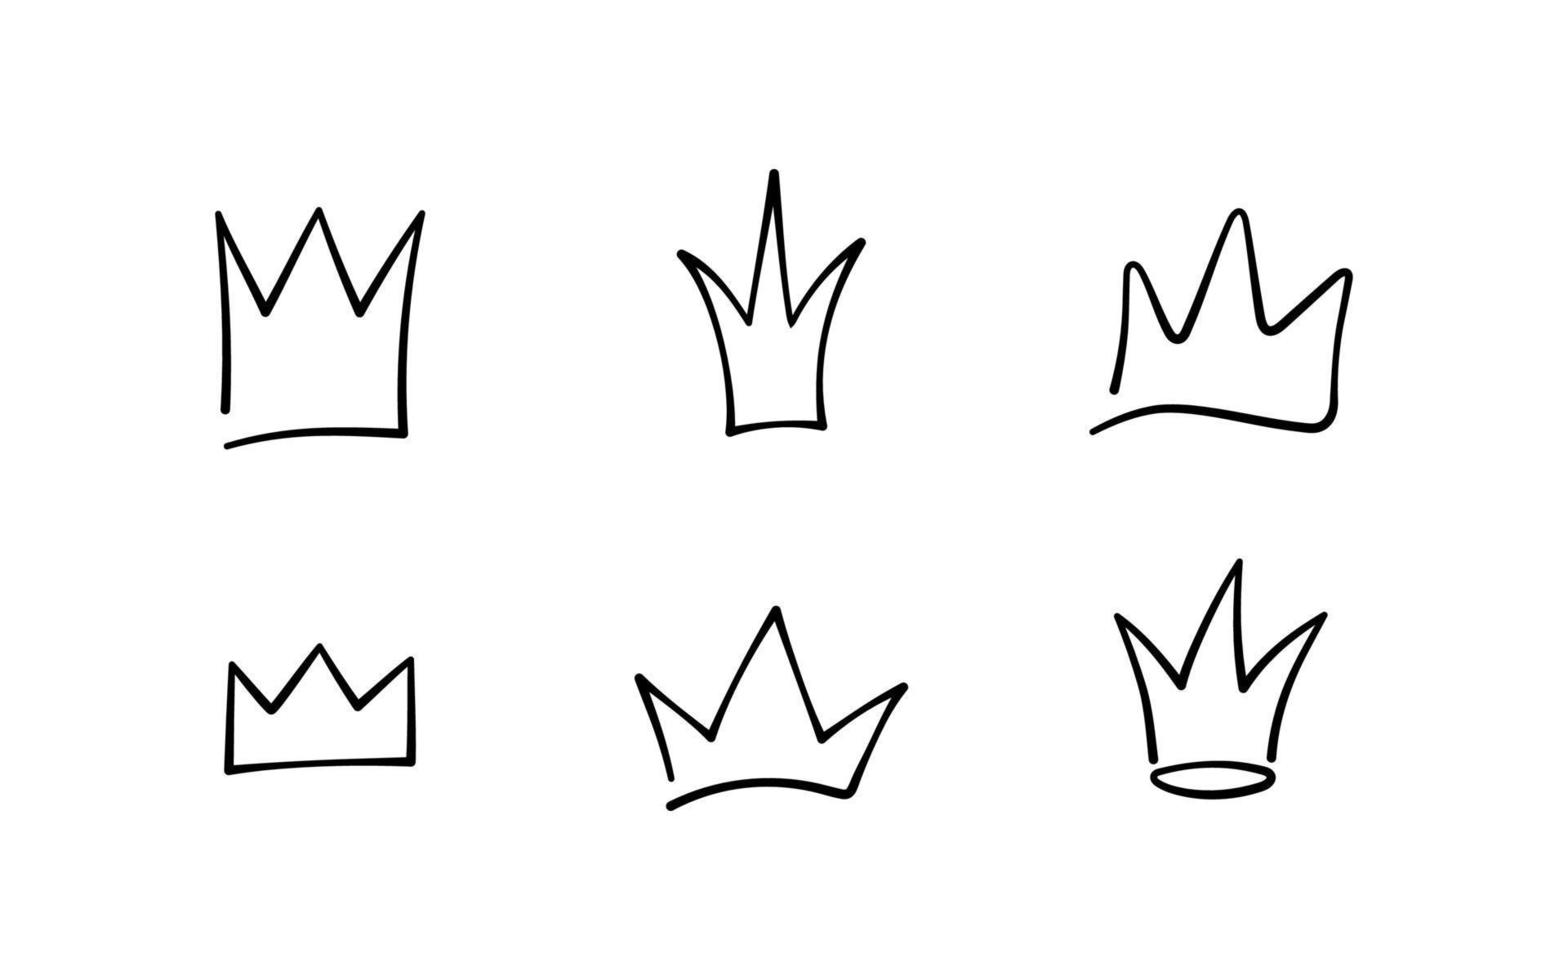 conjunto de coronas de garabatos dibujadas a mano. bocetos de la corona del rey, tiara majestuosa, diademas reales del rey y la reina. ilustración vectorial aislada en estilo garabato sobre fondo blanco vector